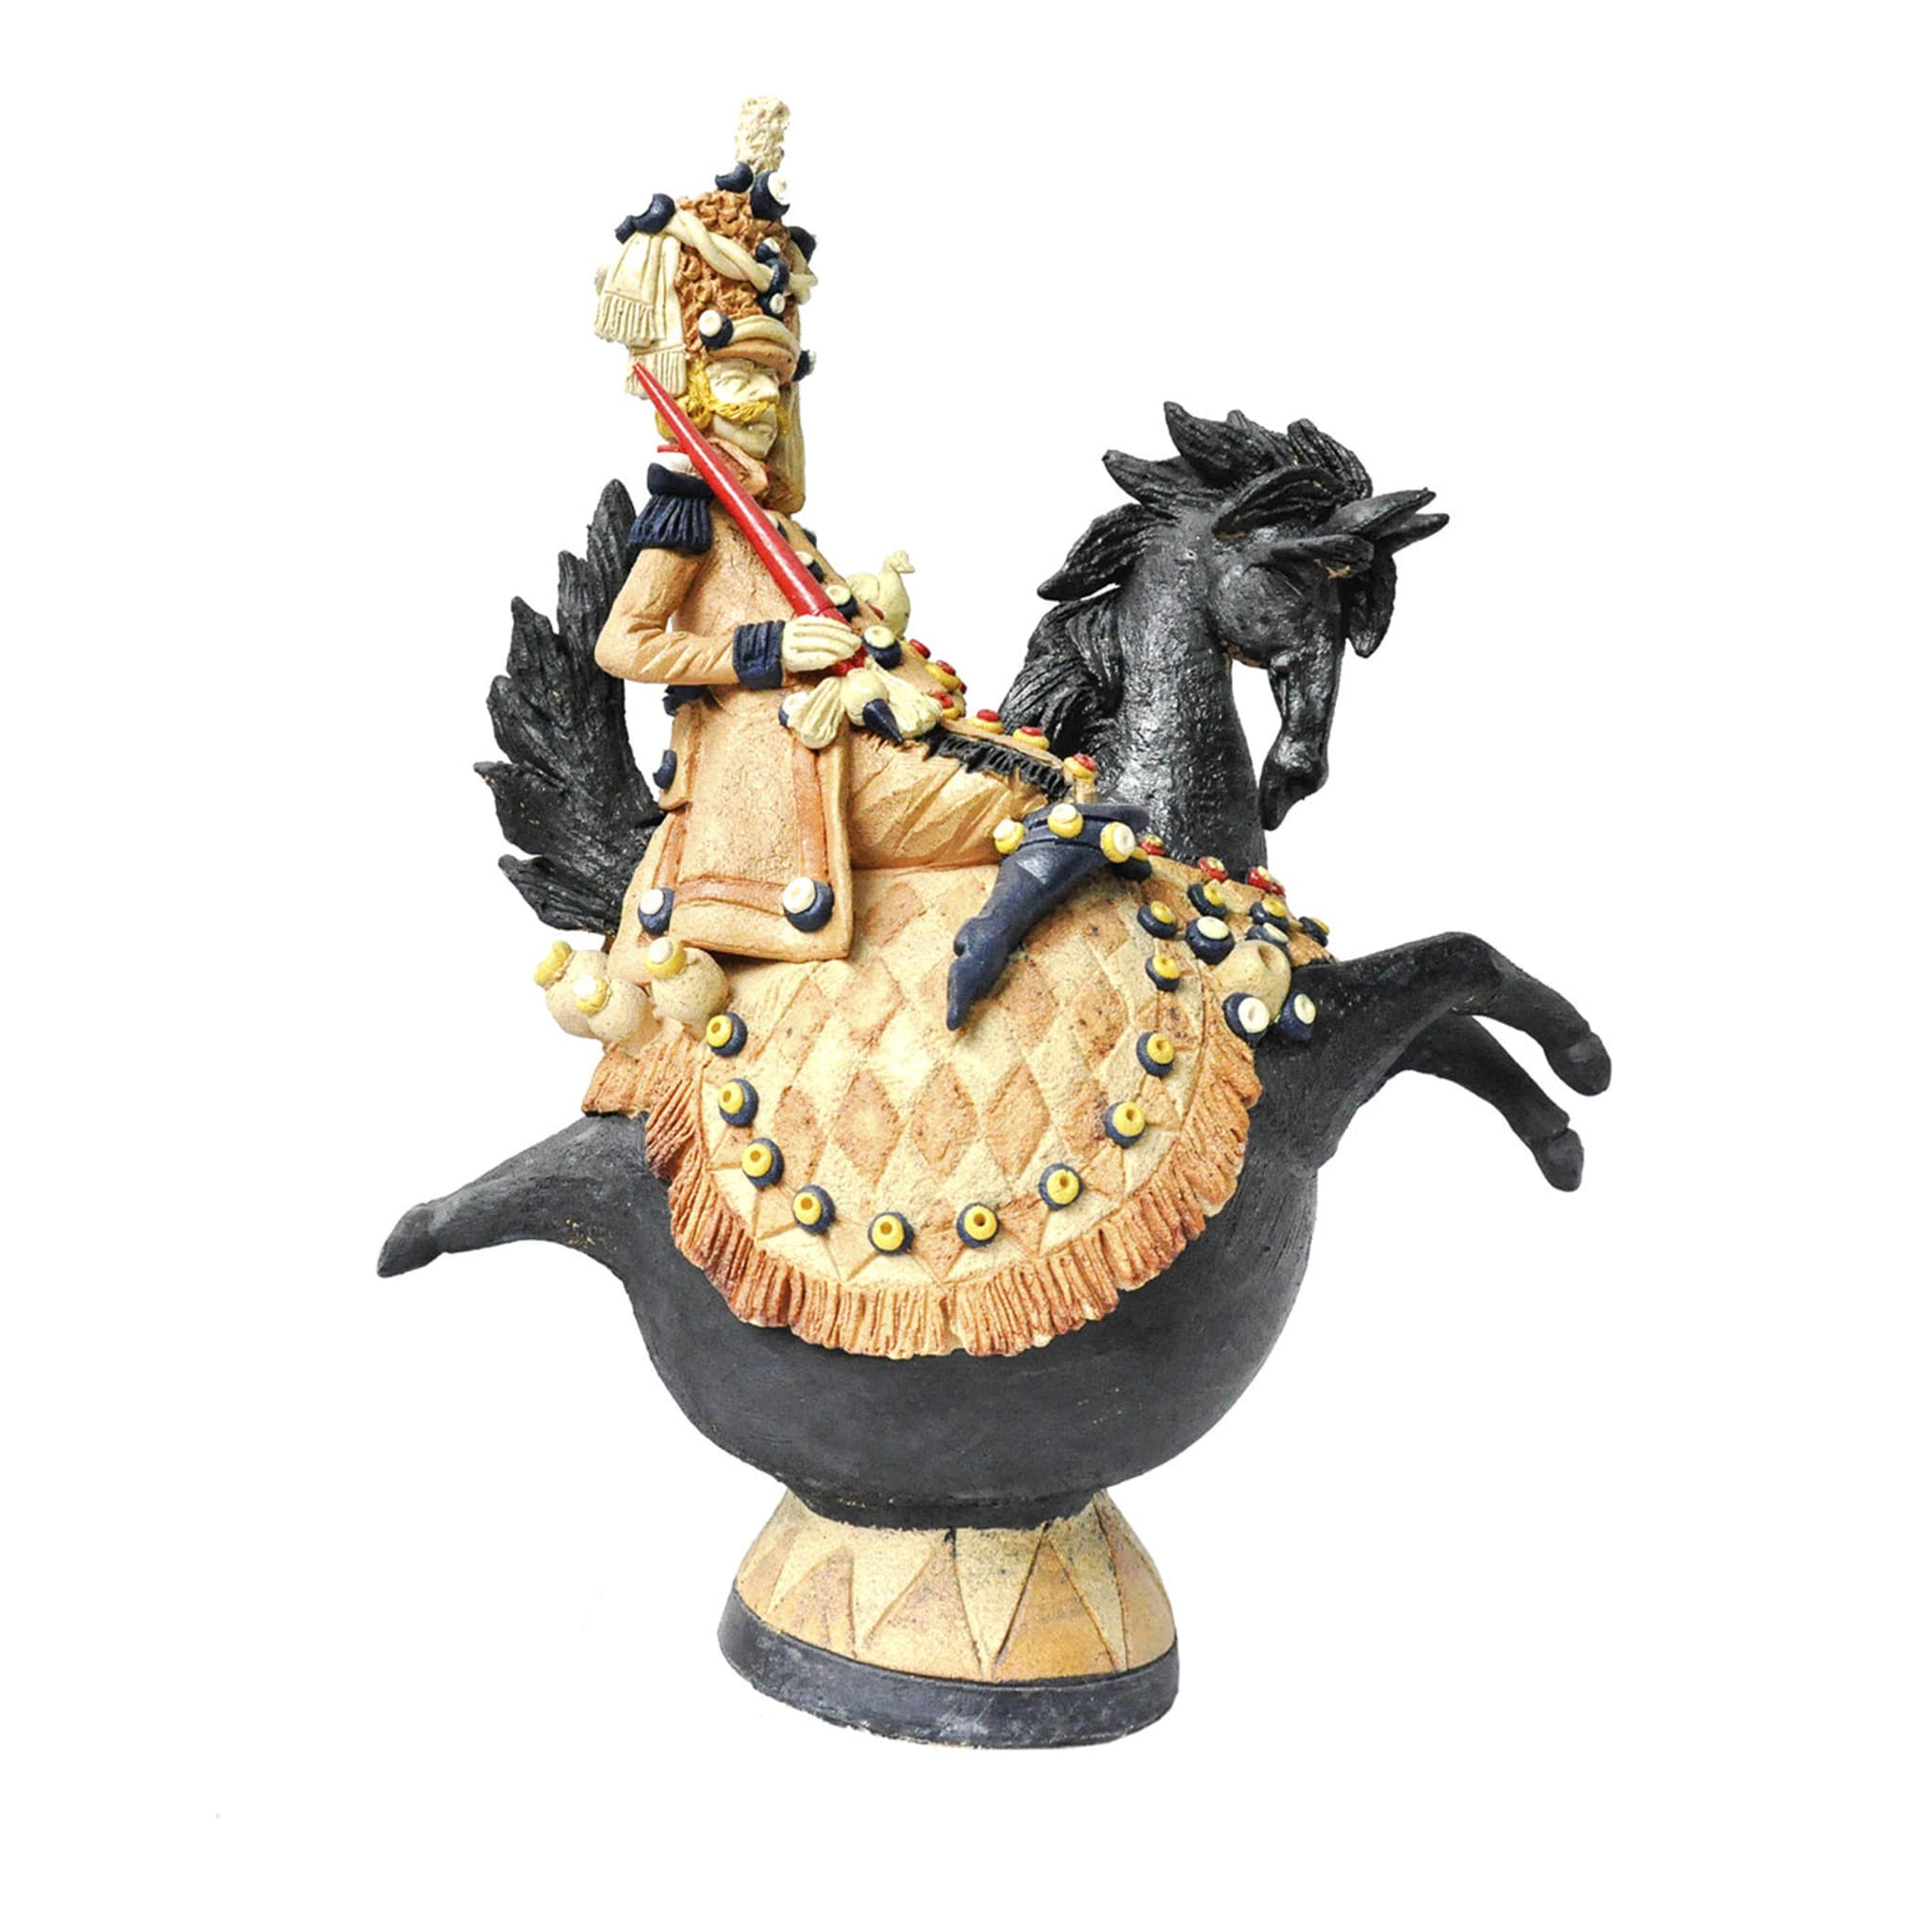 Sculpture d'un hussard sur un cheval féroce - Vue principale